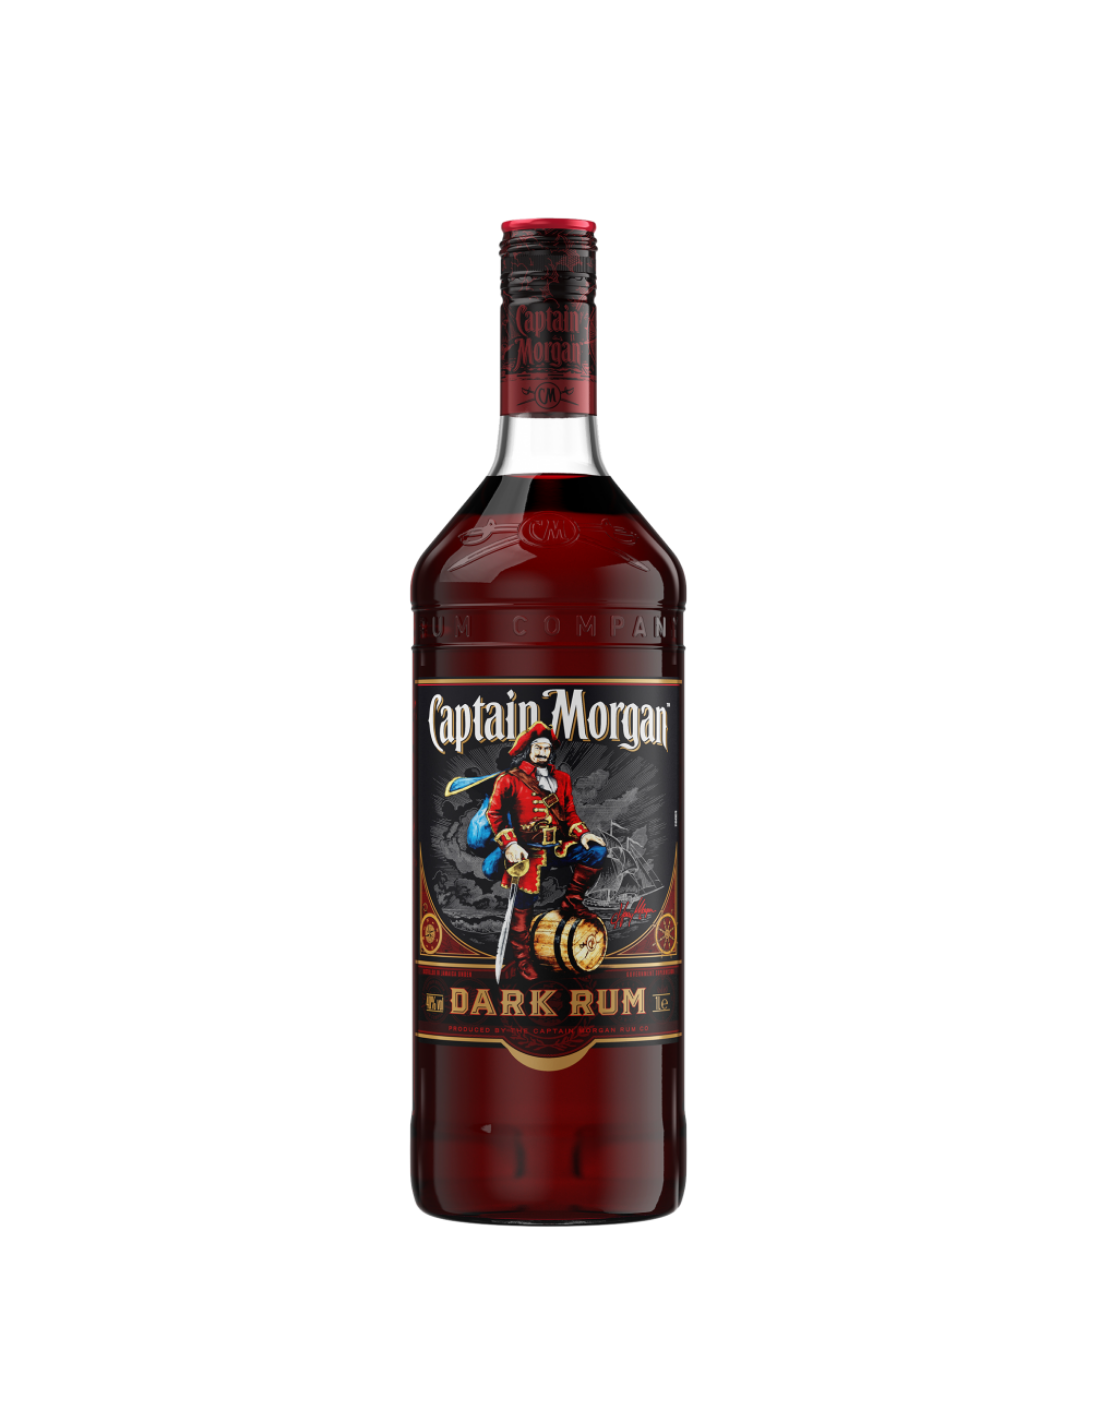 Rom negru Captain Morgan Dark Rum, 40% alc., 1L, Jamaica alcooldiscount.ro